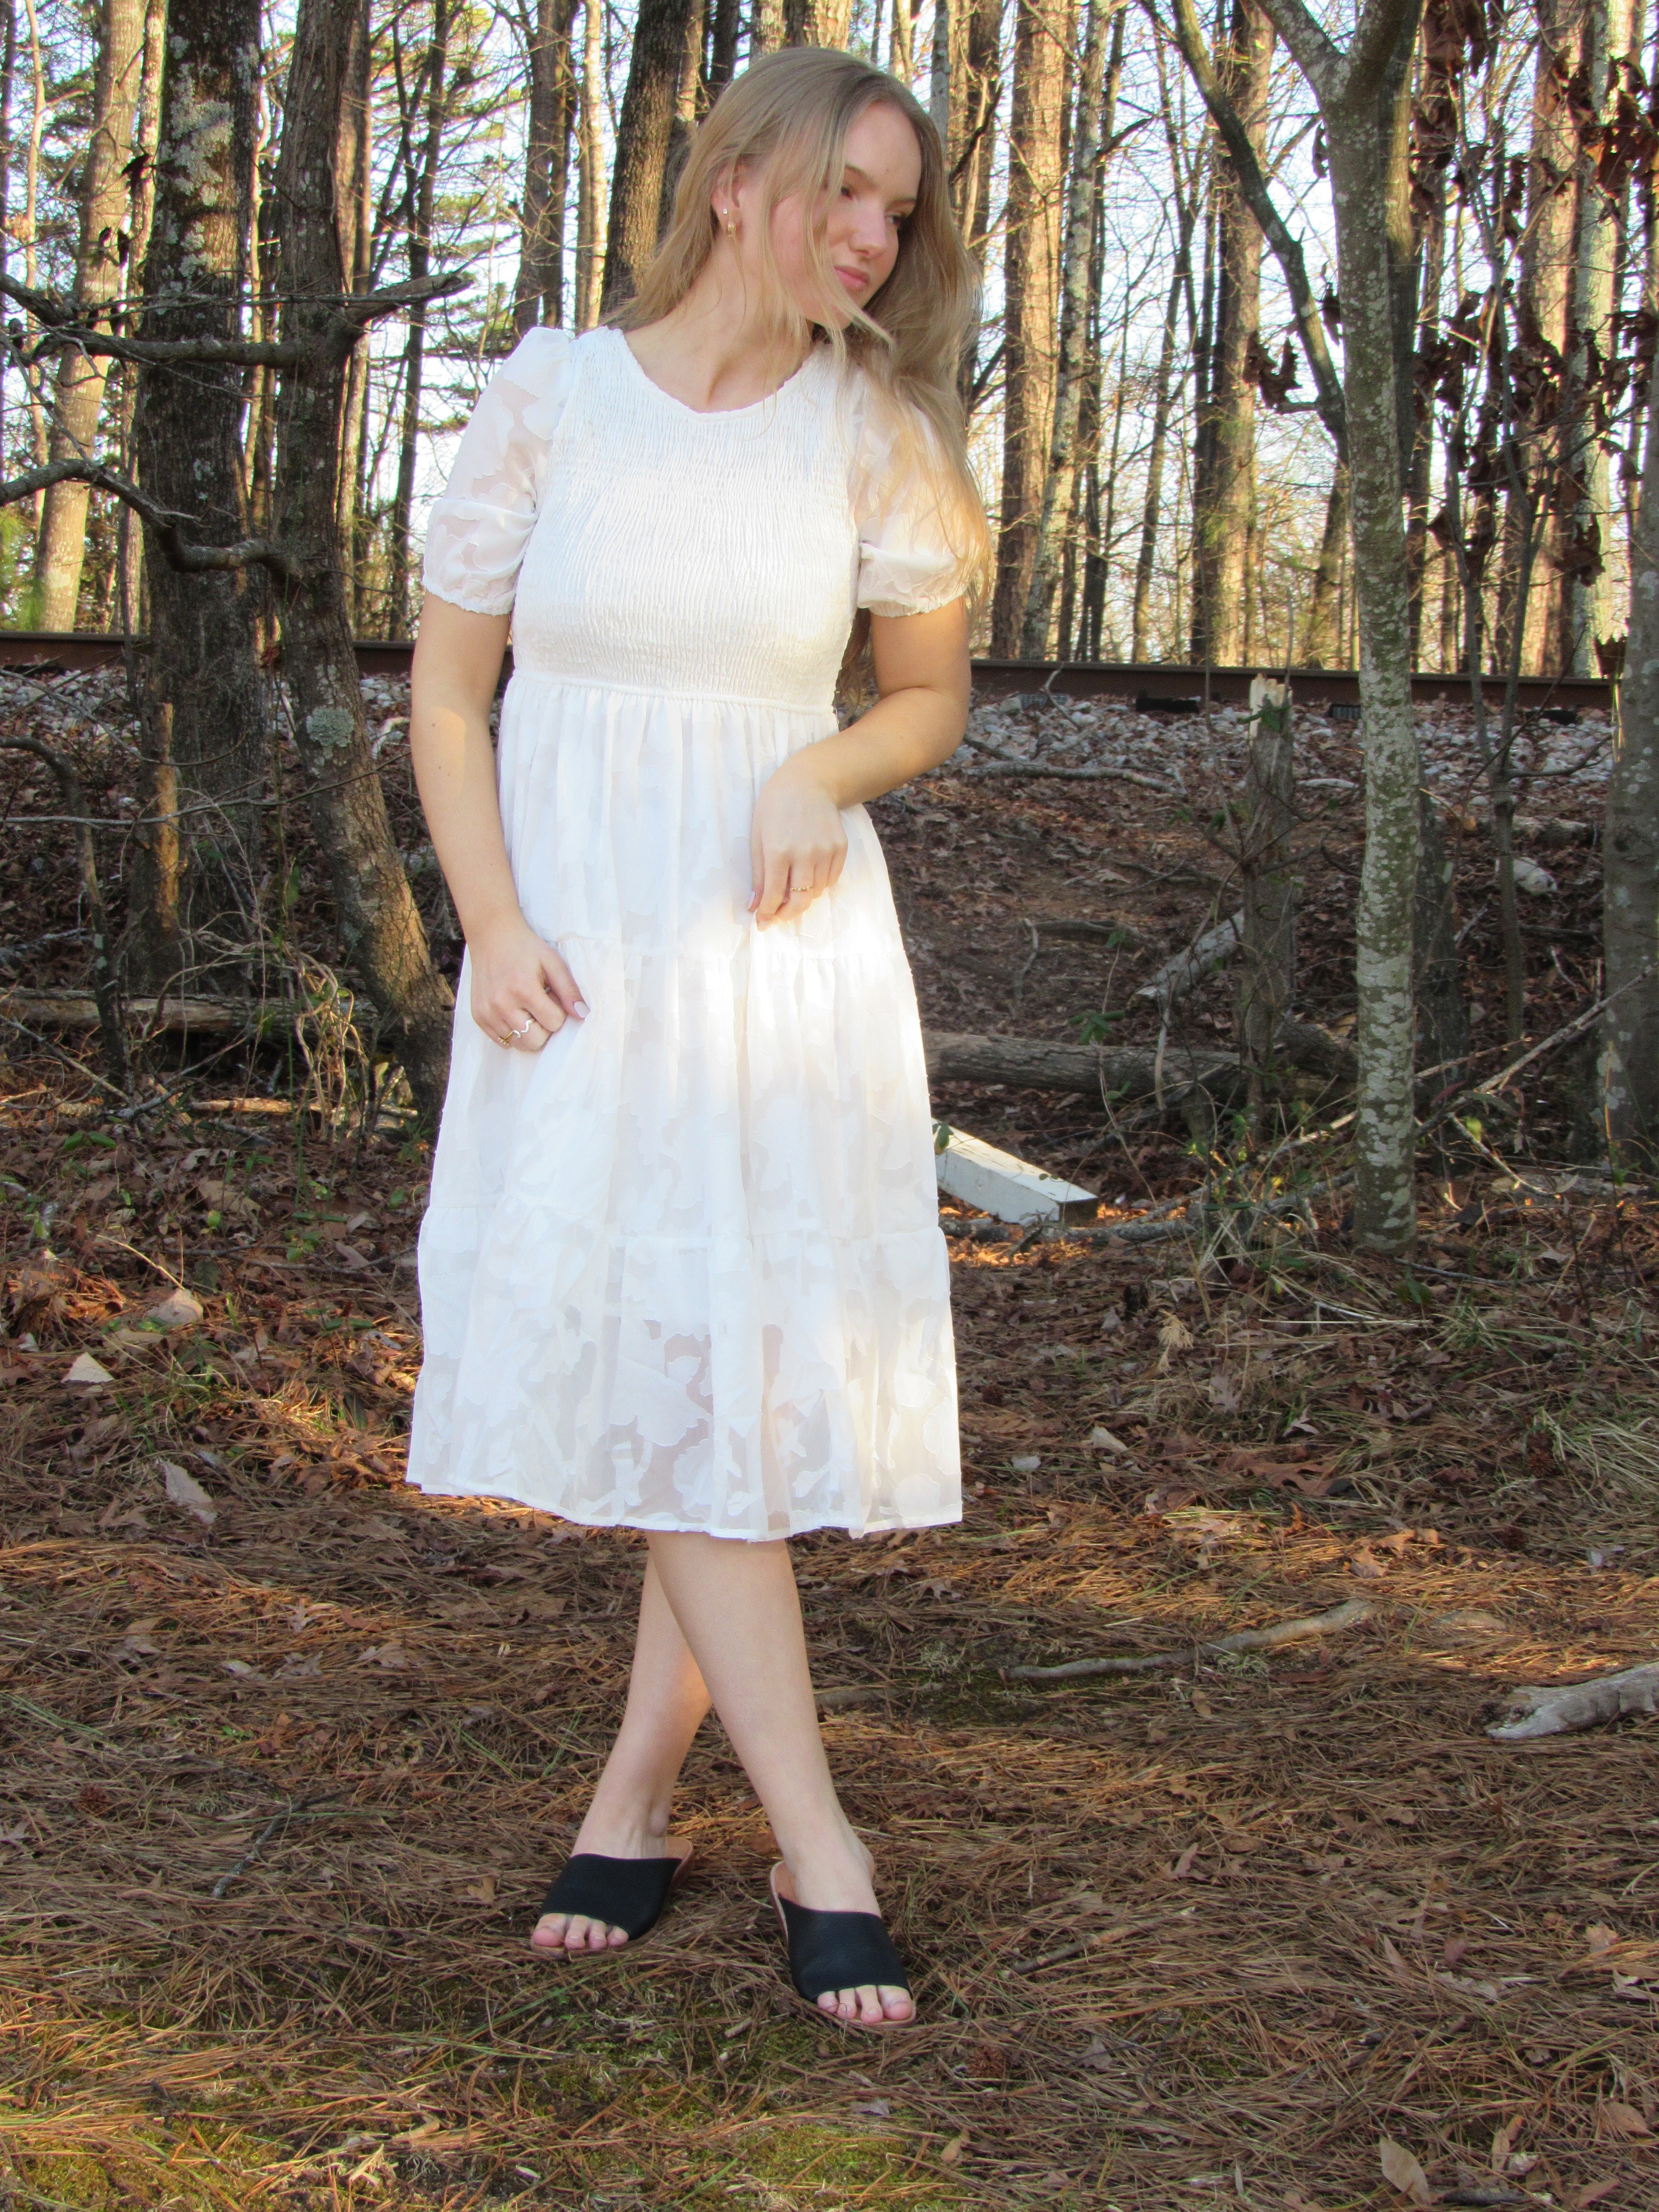 Bohemian White Lace Dress, white dress women bridal, white rehearsal dinner dress - Spring Summer beach Boho Dress